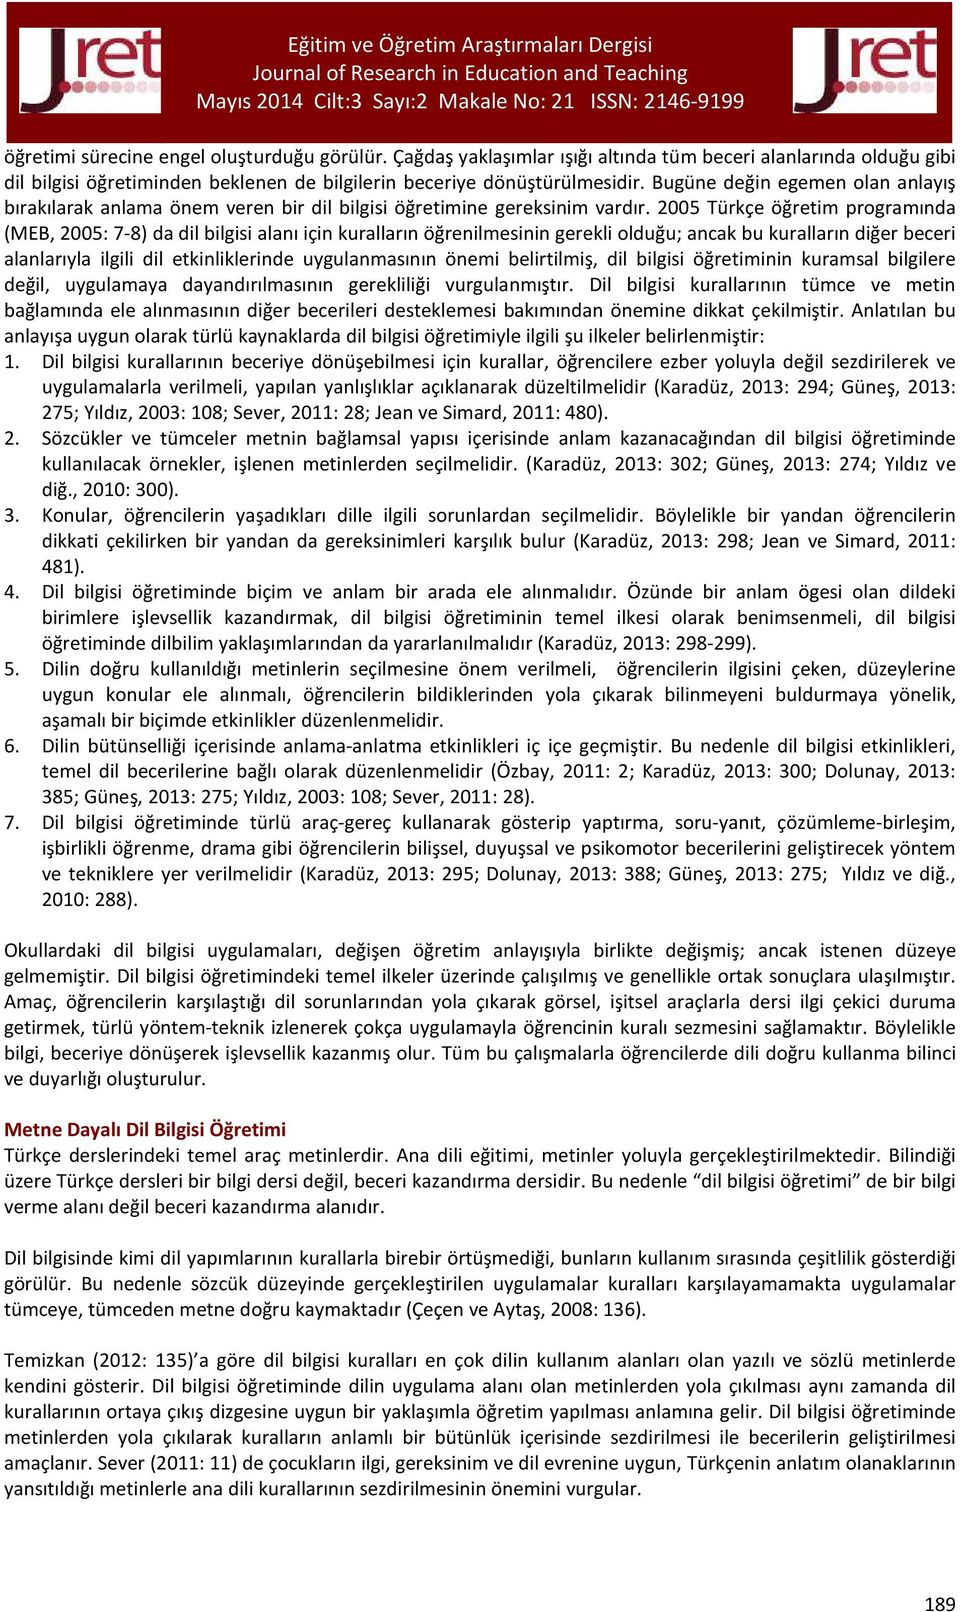 2005 Türkçe öğretim programında (MEB, 2005: 7-8) da dil bilgisi alanı için kuralların öğrenilmesinin gerekli olduğu; ancak bu kuralların diğer beceri alanlarıyla ilgili dil etkinliklerinde